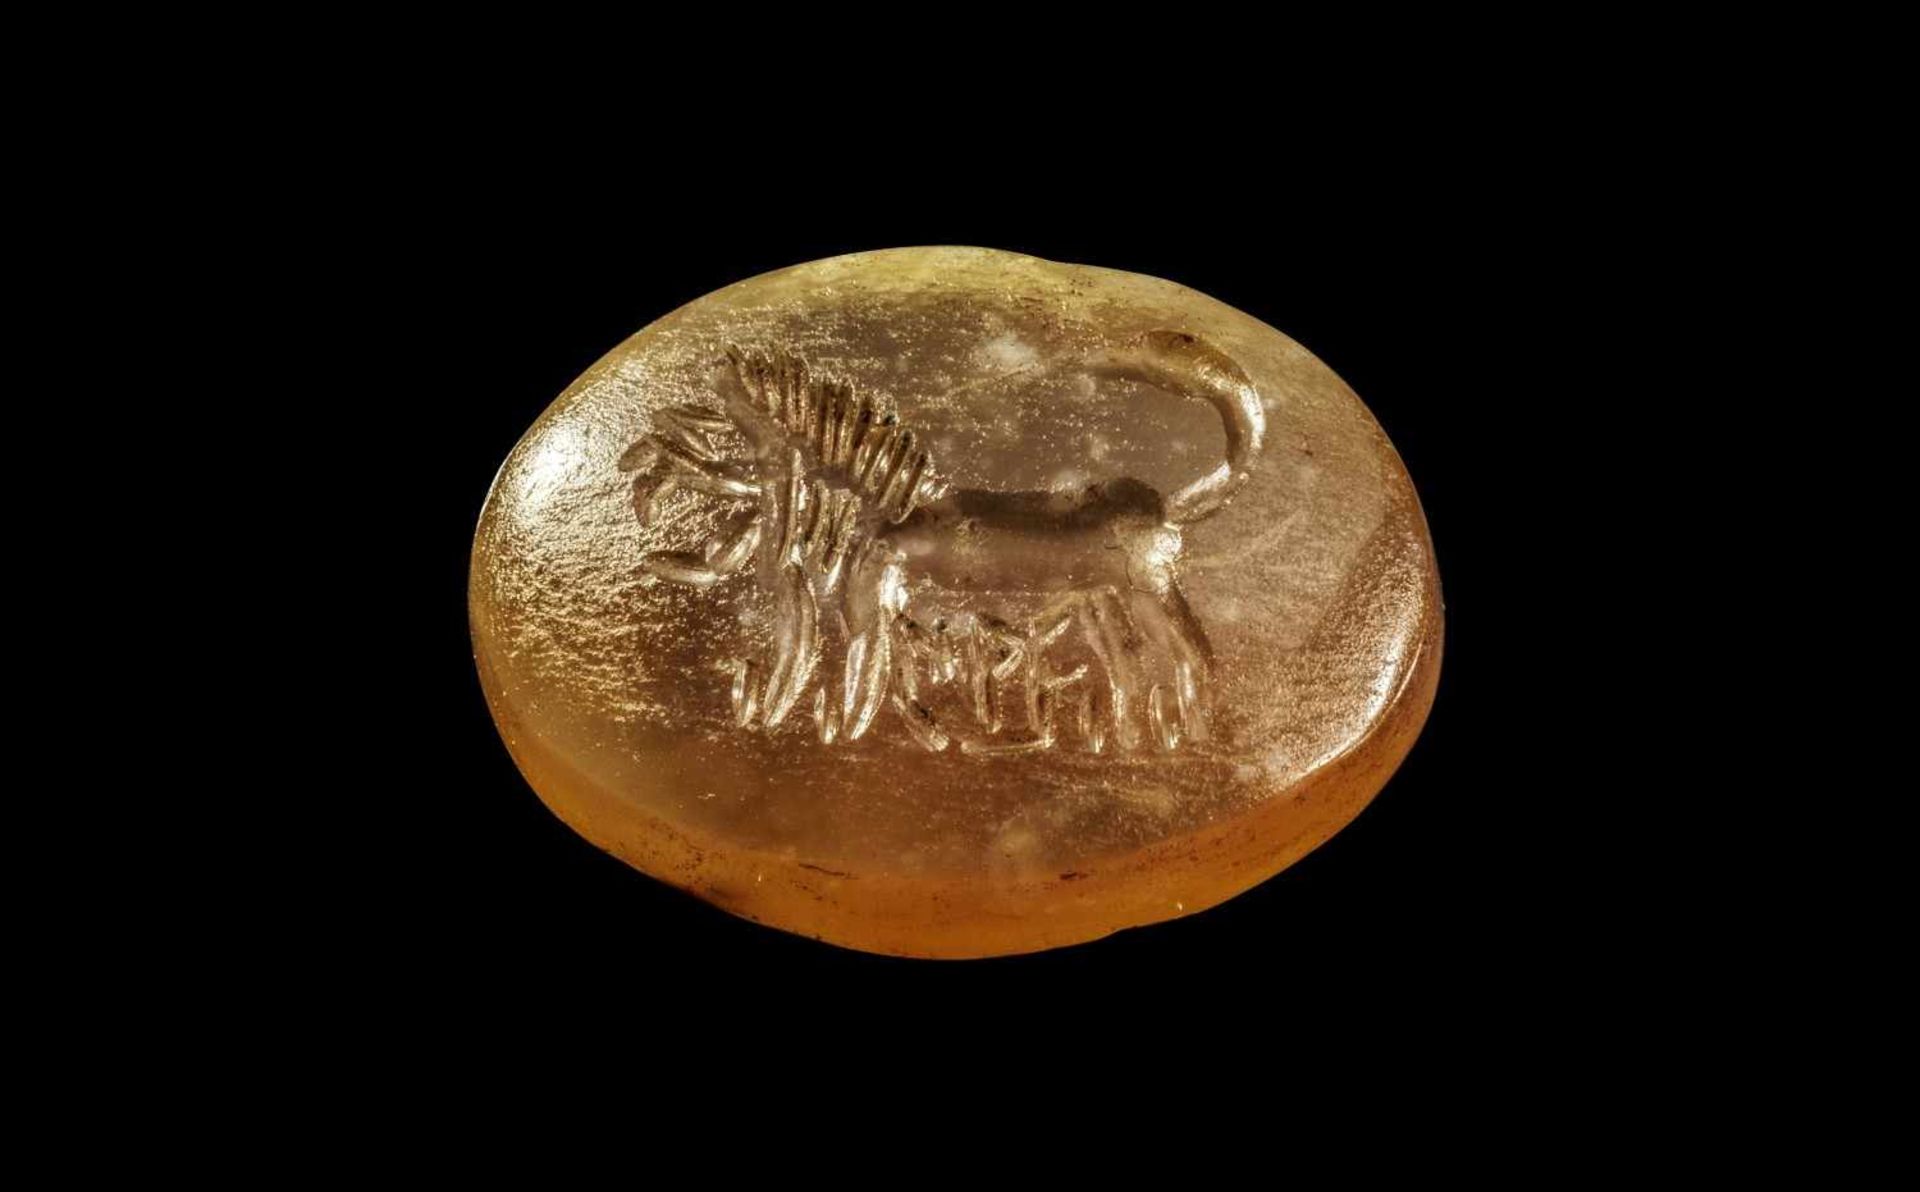 Achat-Gemme mit Löwe. Aramäisch, 8. Jh. v. Chr. B 2cm. Skaraboid, querovaler Intaglio, darauf ein